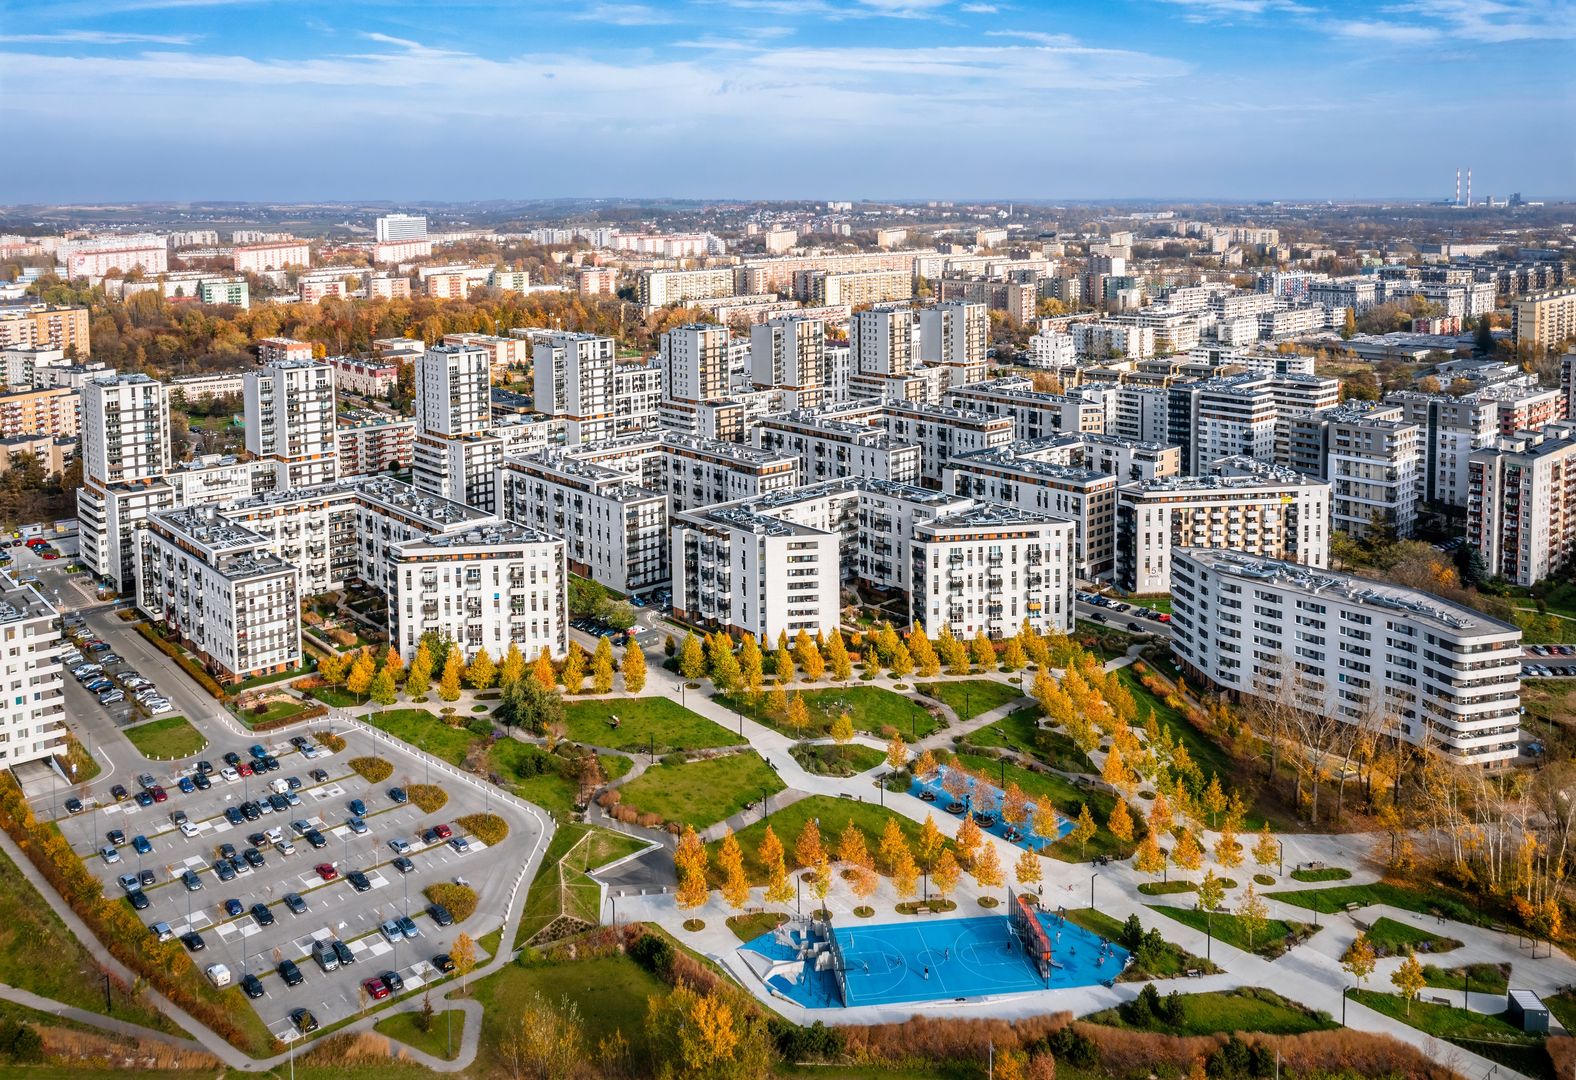 Ceny mieszkań w Polsce rosną najszybciej w całej UE. Nowy raport nie pozostawia złudzeń